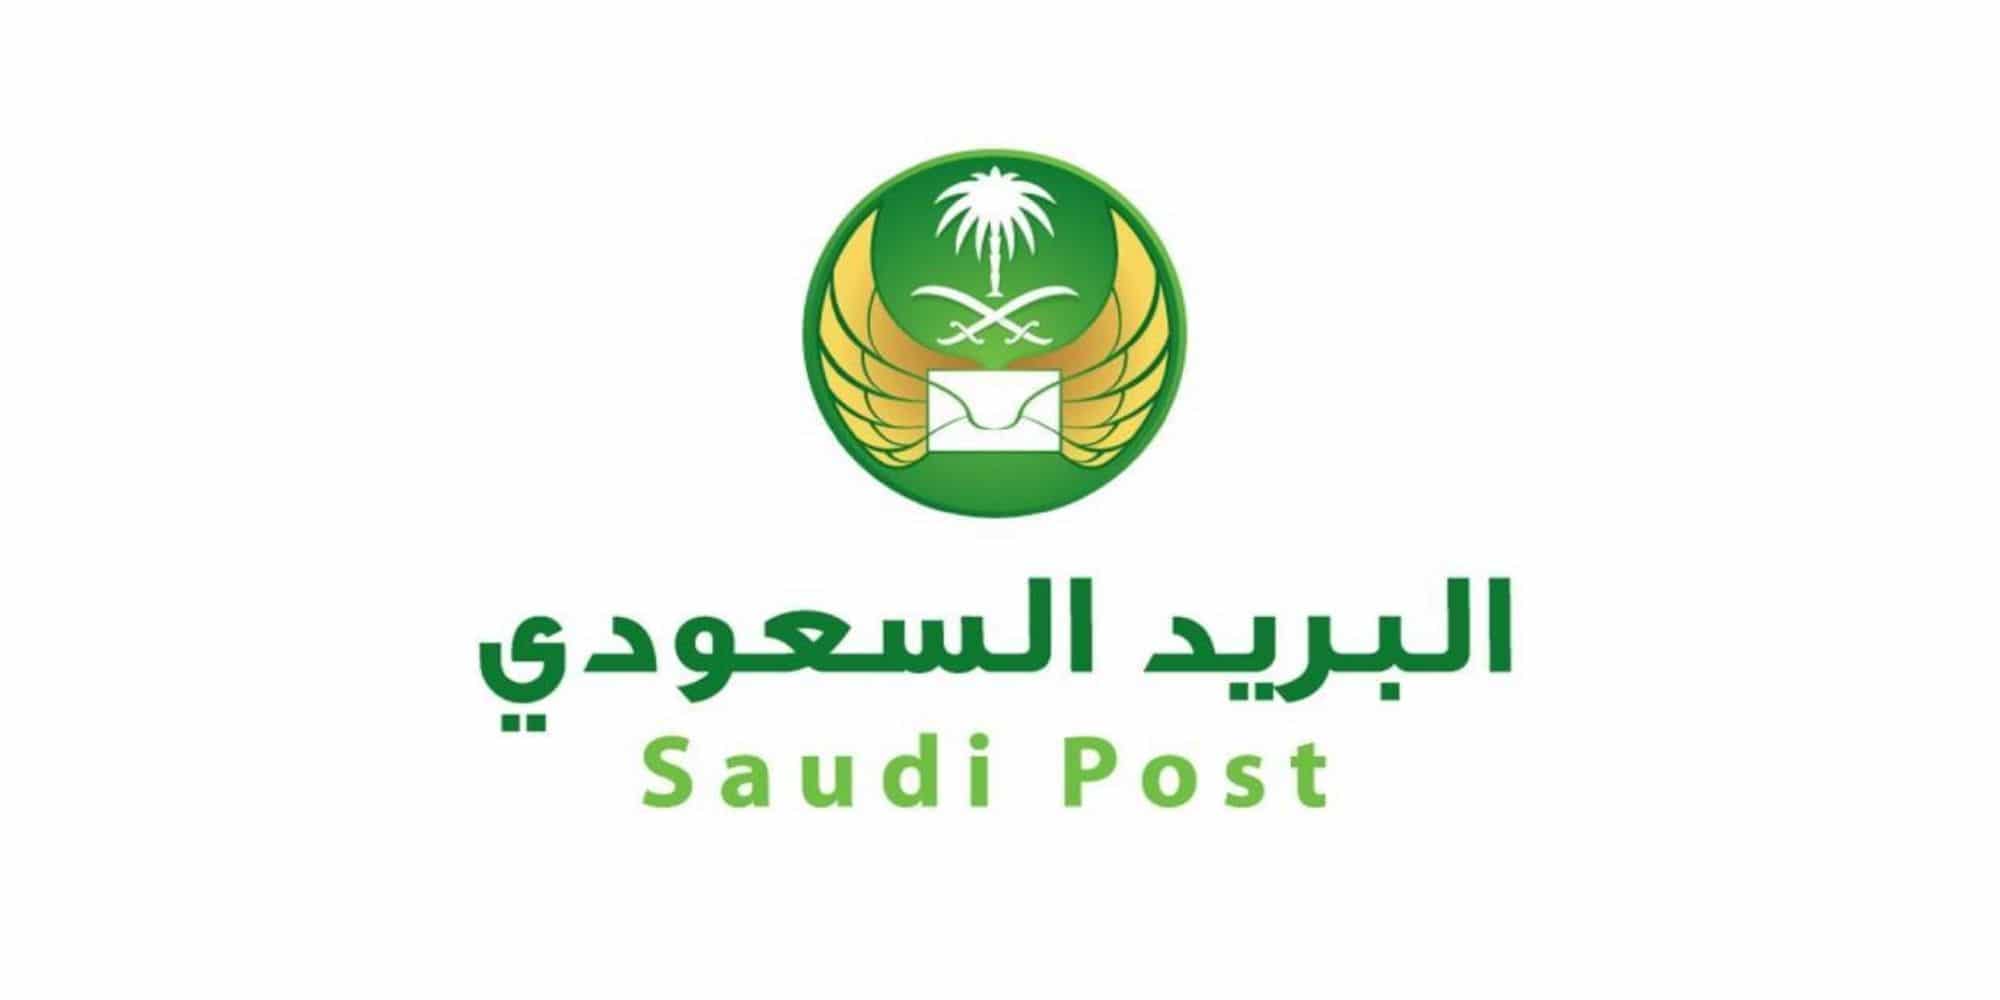 رابط وخطوات التسجيل في البريد السعودي للأفراد